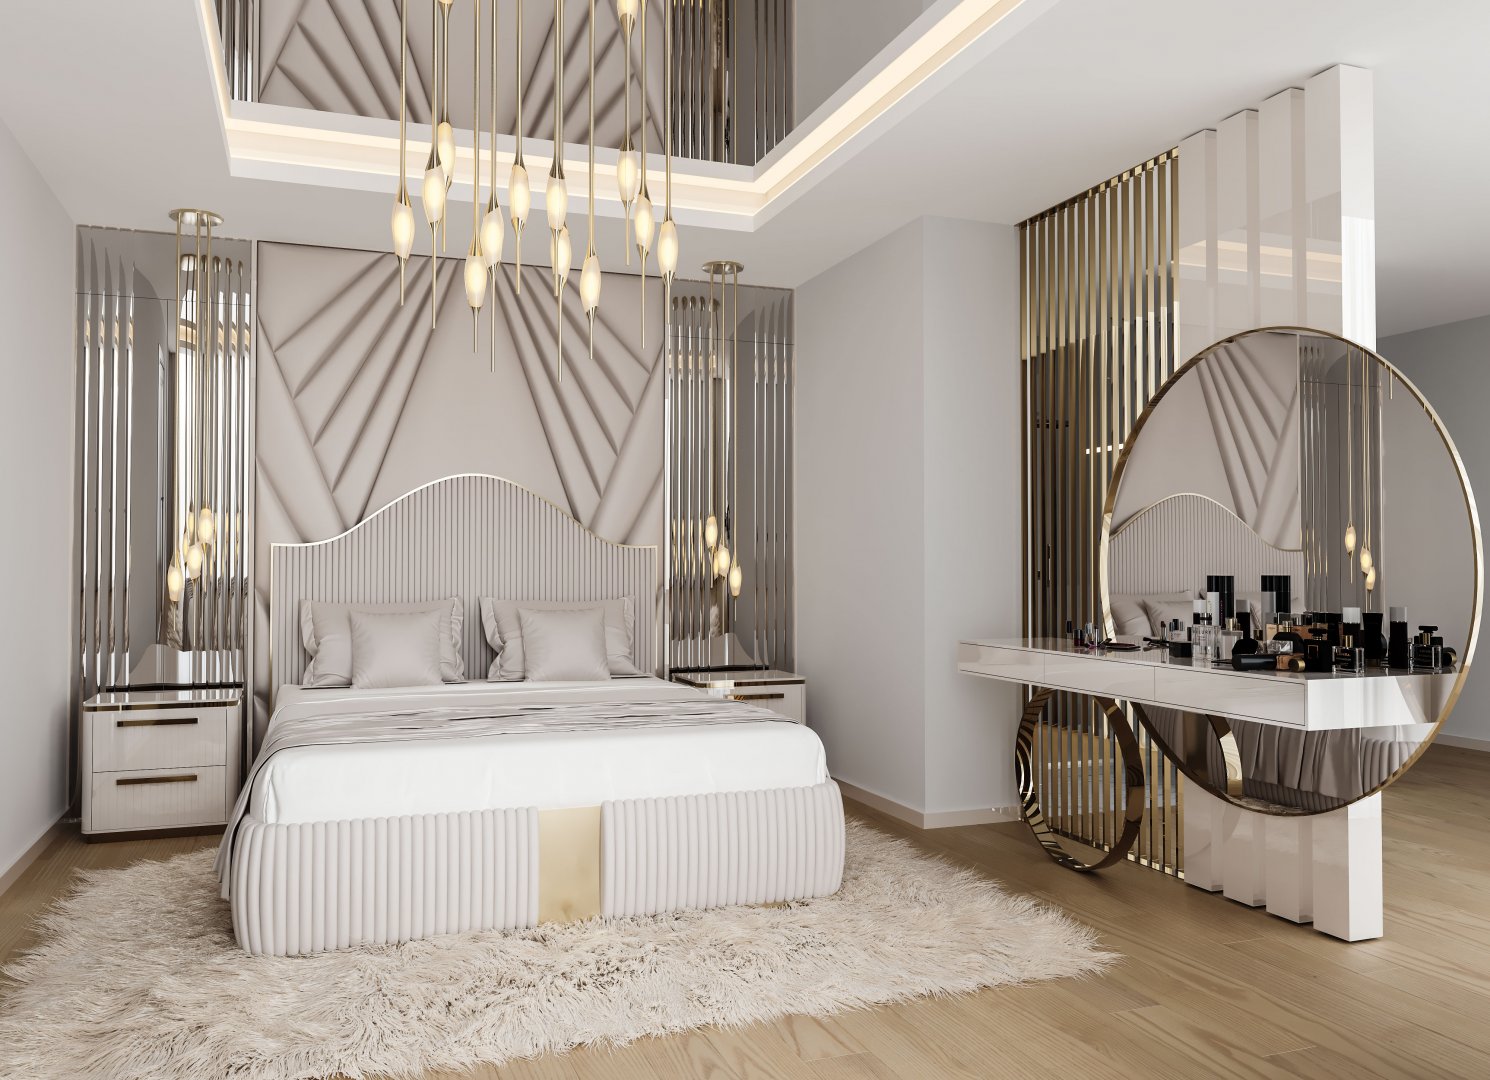 Özel Yatak Odası Projesi | Elano Luxury Furniture - Masko - Modoko